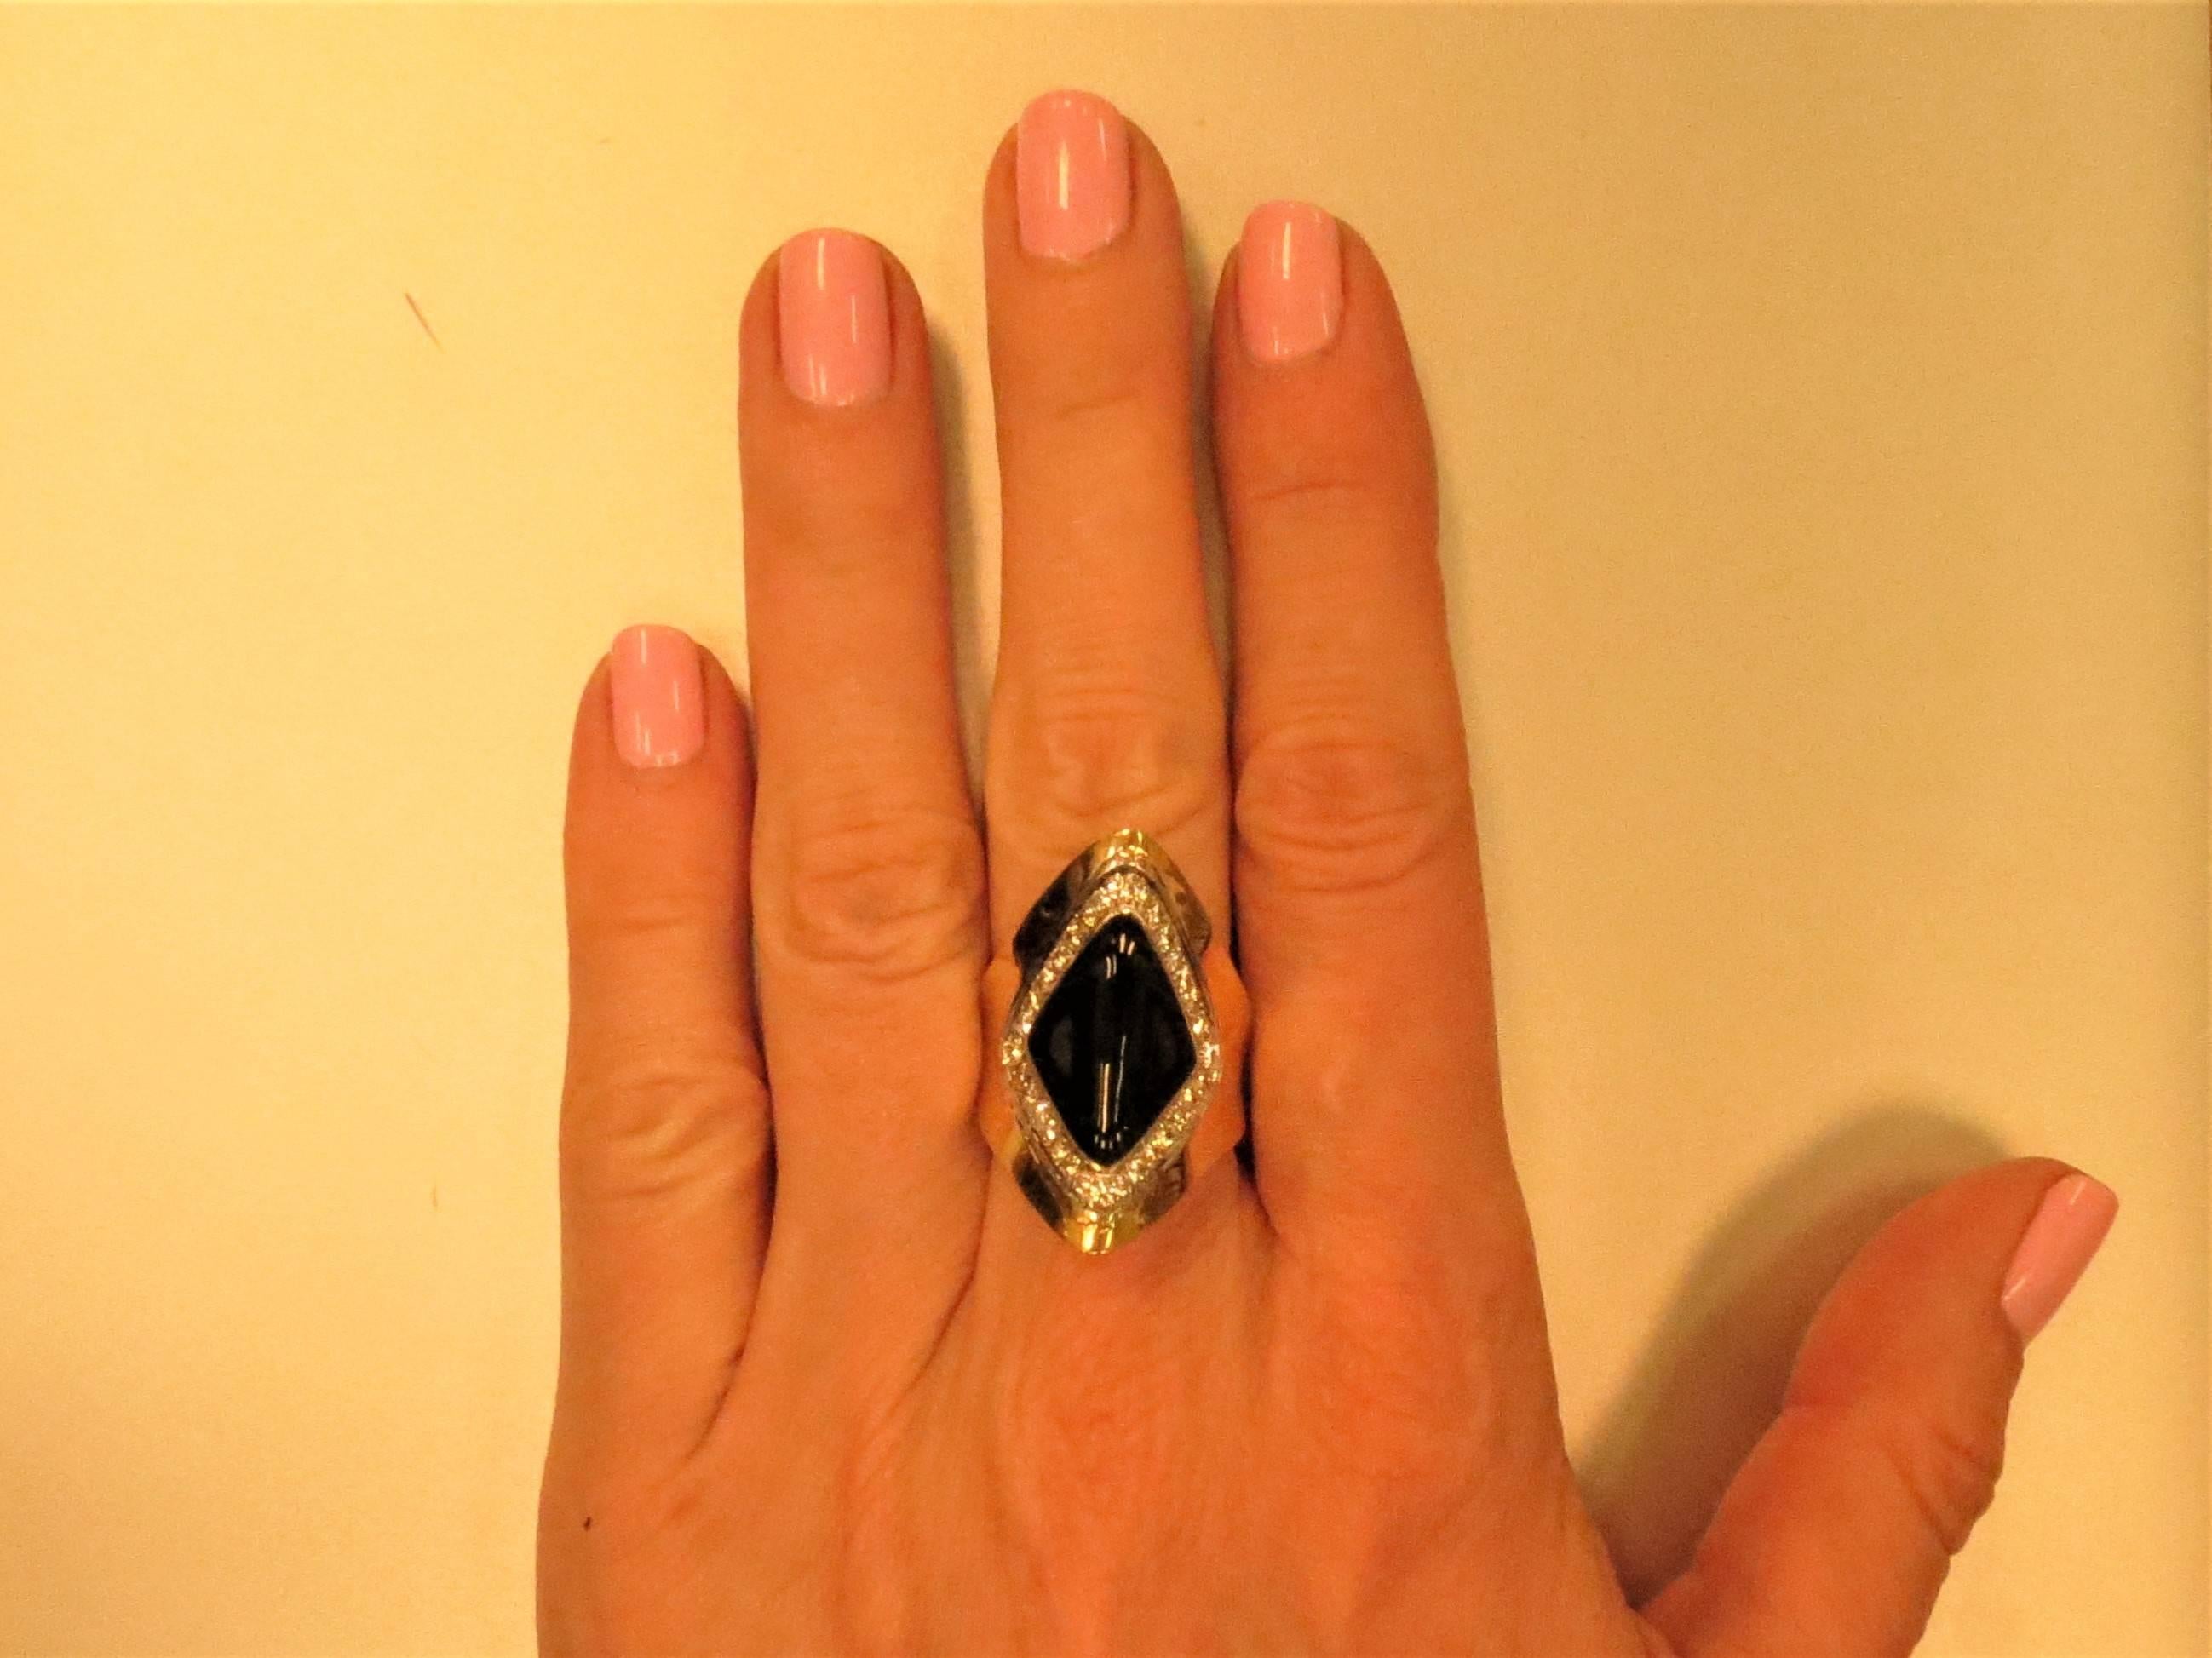 schwarzer Onyxring aus 18 Karat Gelbgold, besetzt mit 24 runden Diamanten im Vollschliff mit einem Gewicht von 0,50cts, Reinheit VS-SI.
Fingergröße 6. Kann größenmäßig angepasst werden.